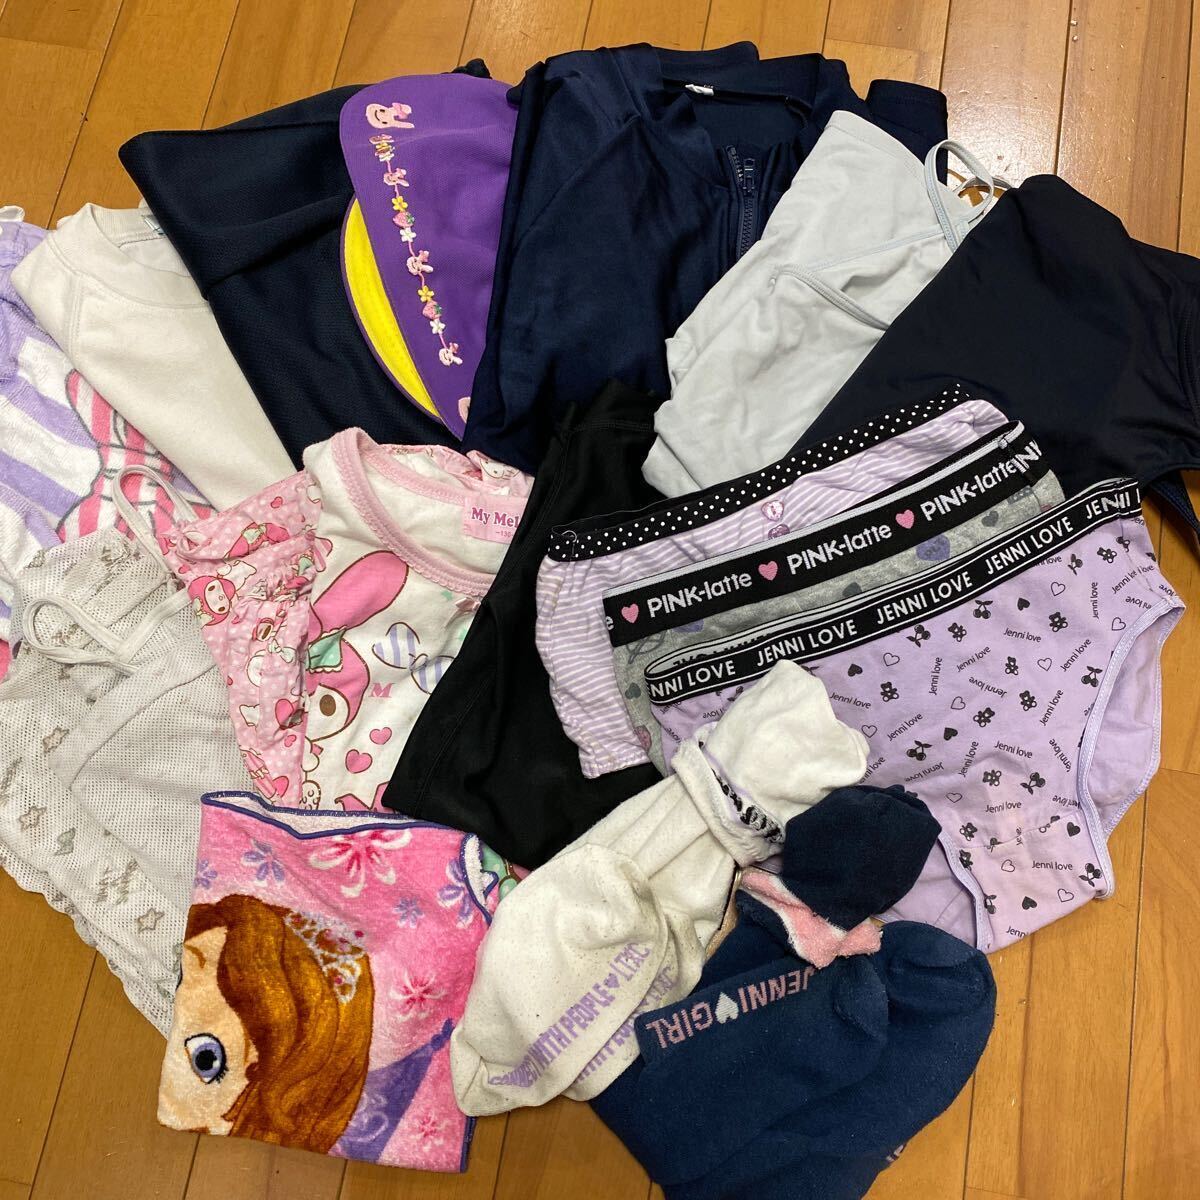 2 7 未使用品 コスプレ衣装 運動シャツ ハーフパンツ パジャマ タンクトップ タオル 靴下 女の子用 柄 綿 詰め合わせ ダンボール 匿名発送の画像1